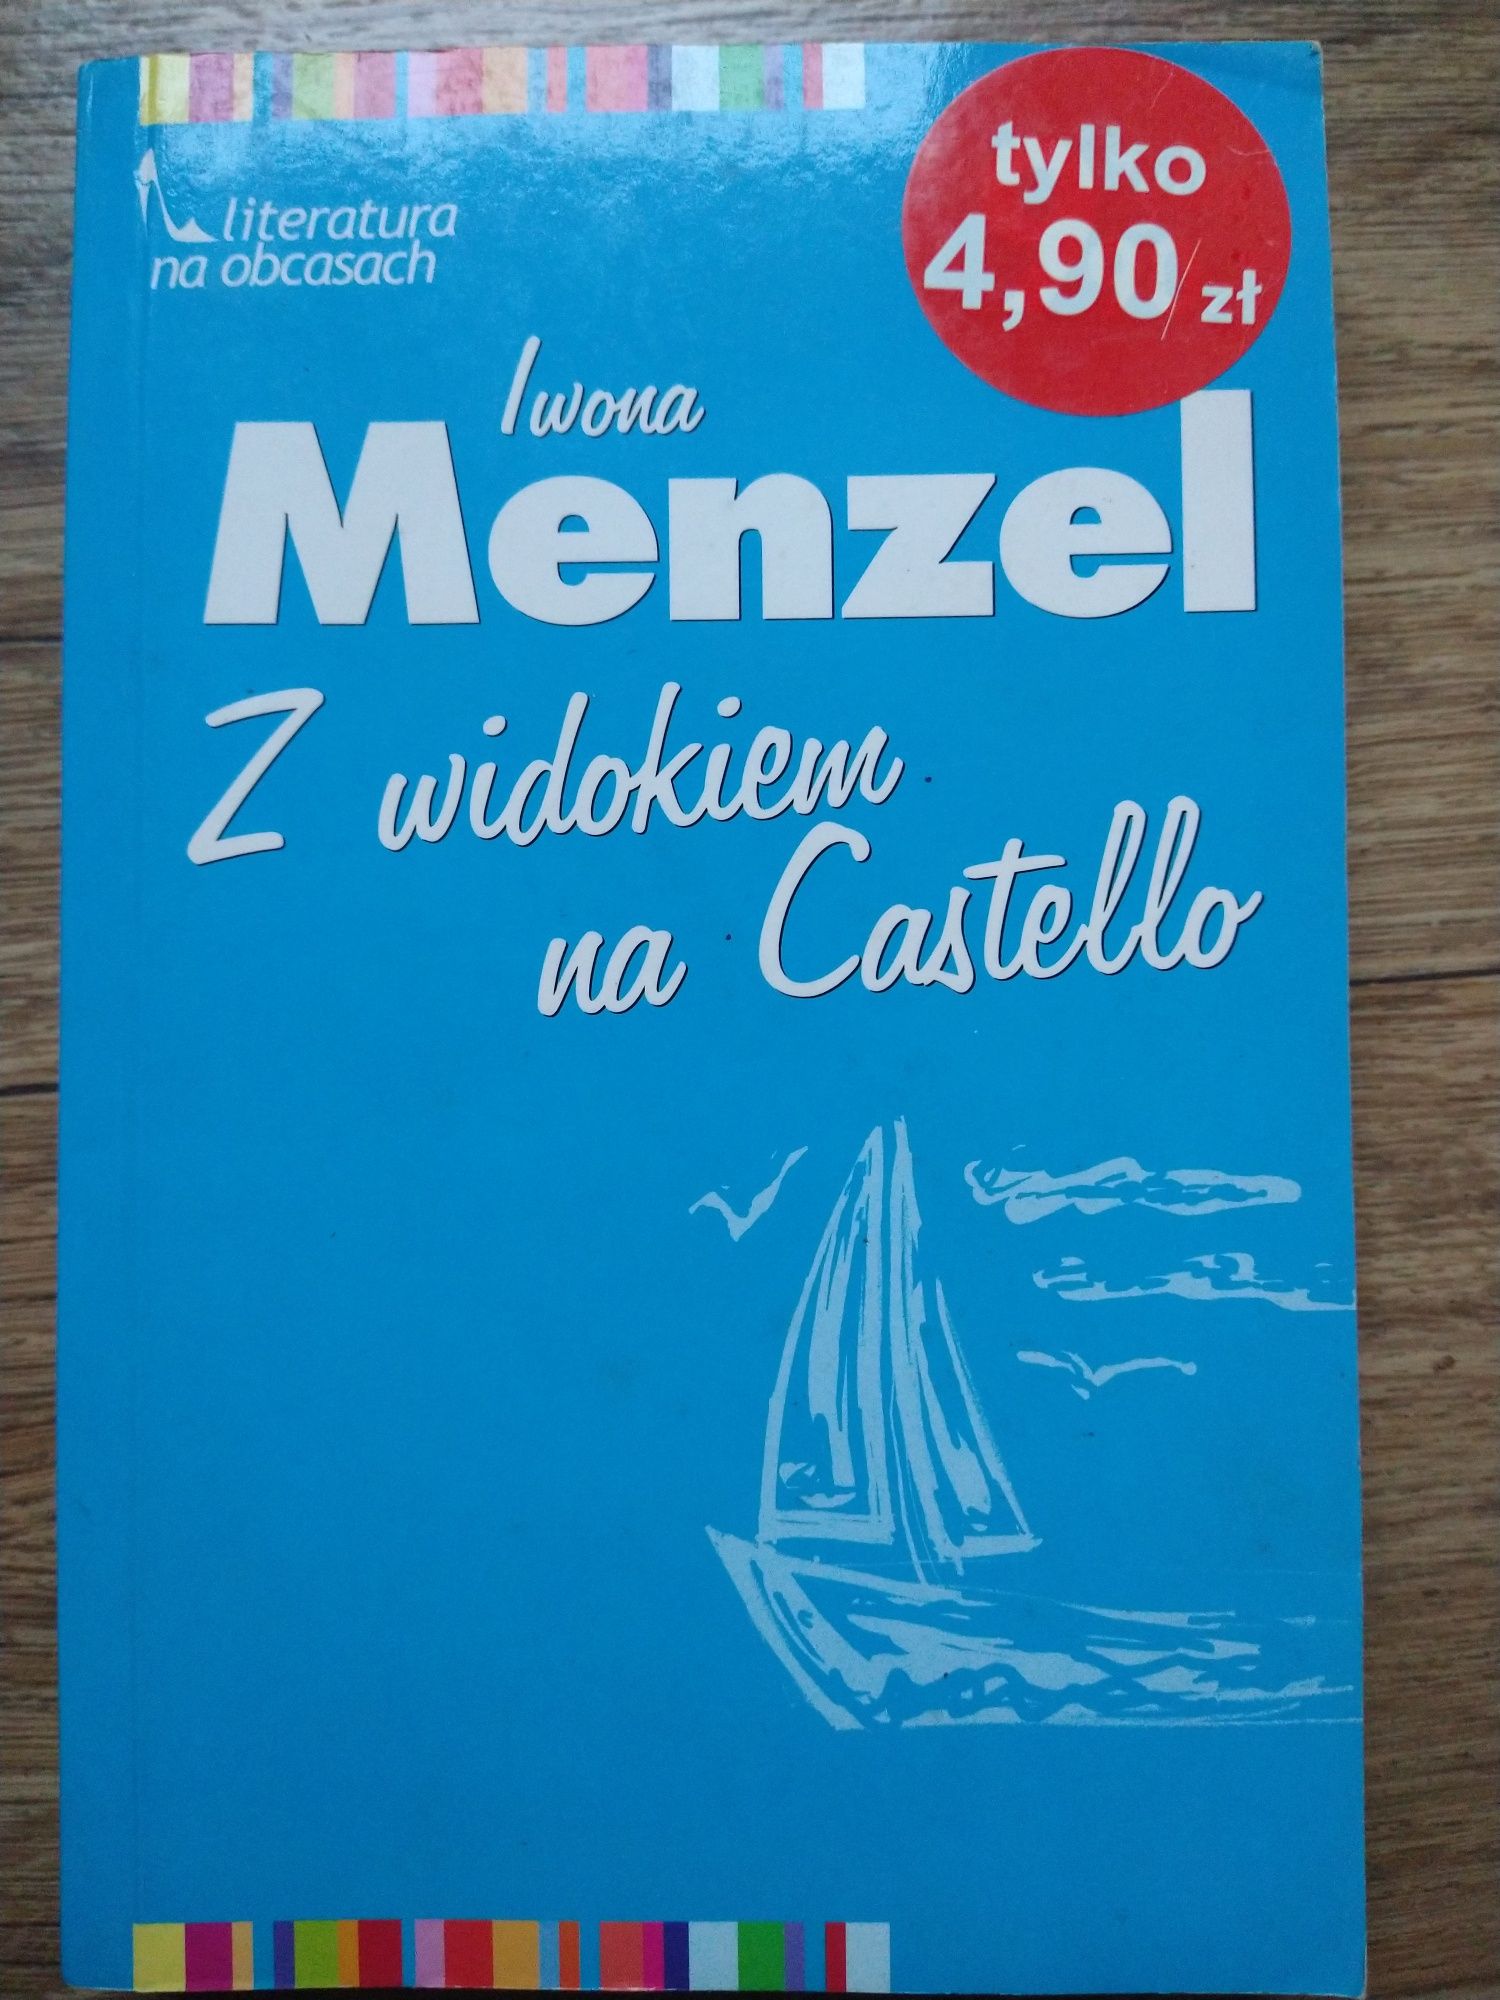 Książka Iwona Menzel